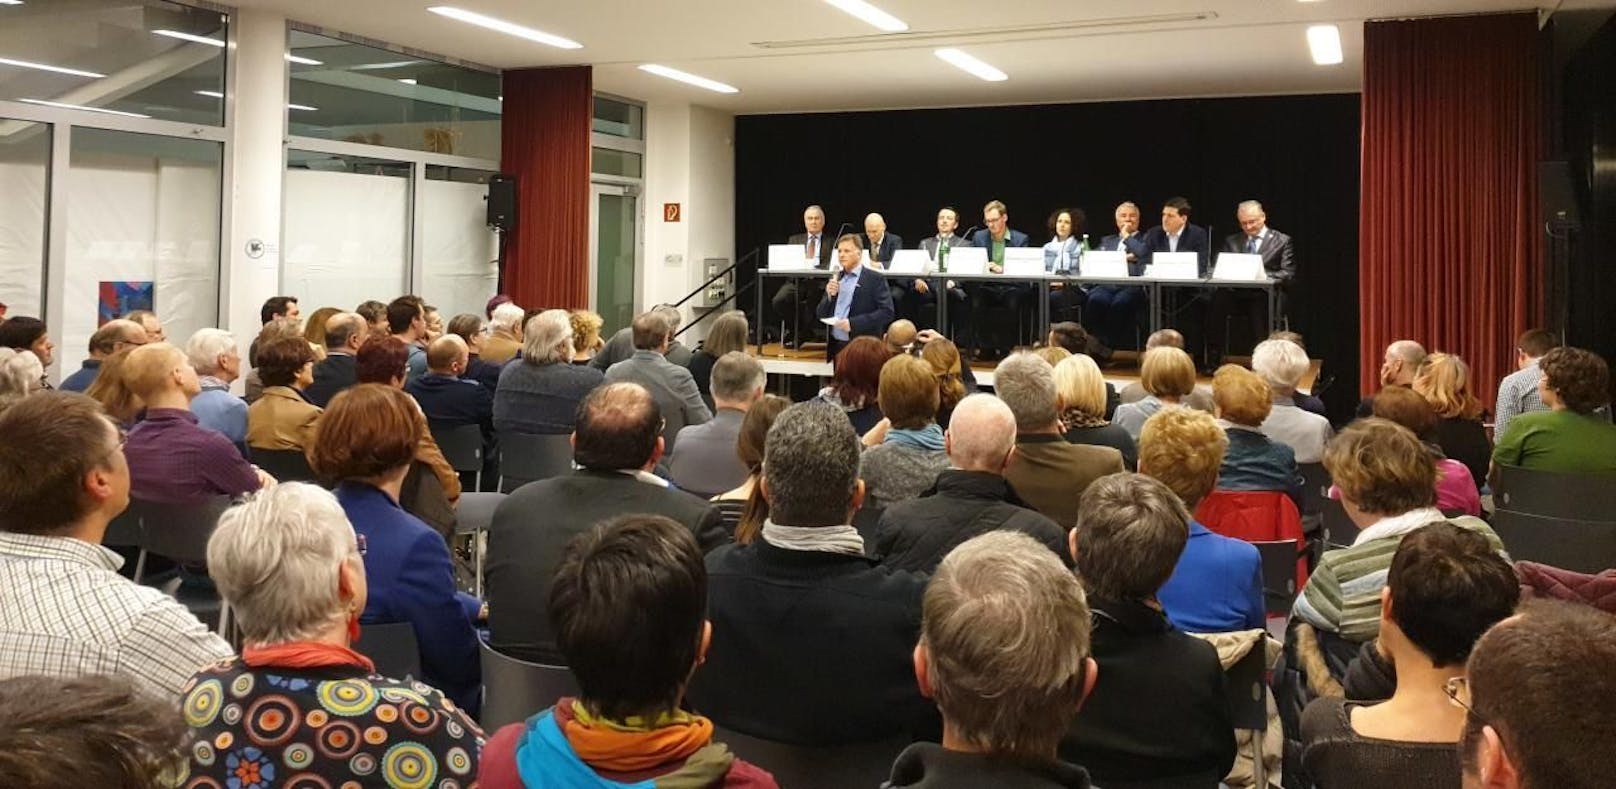 Äußerst gut besuchte Podiumsdiskussion der acht Spitzenkandidaten im Zuge der Gemeinderatswahl am 24. März.